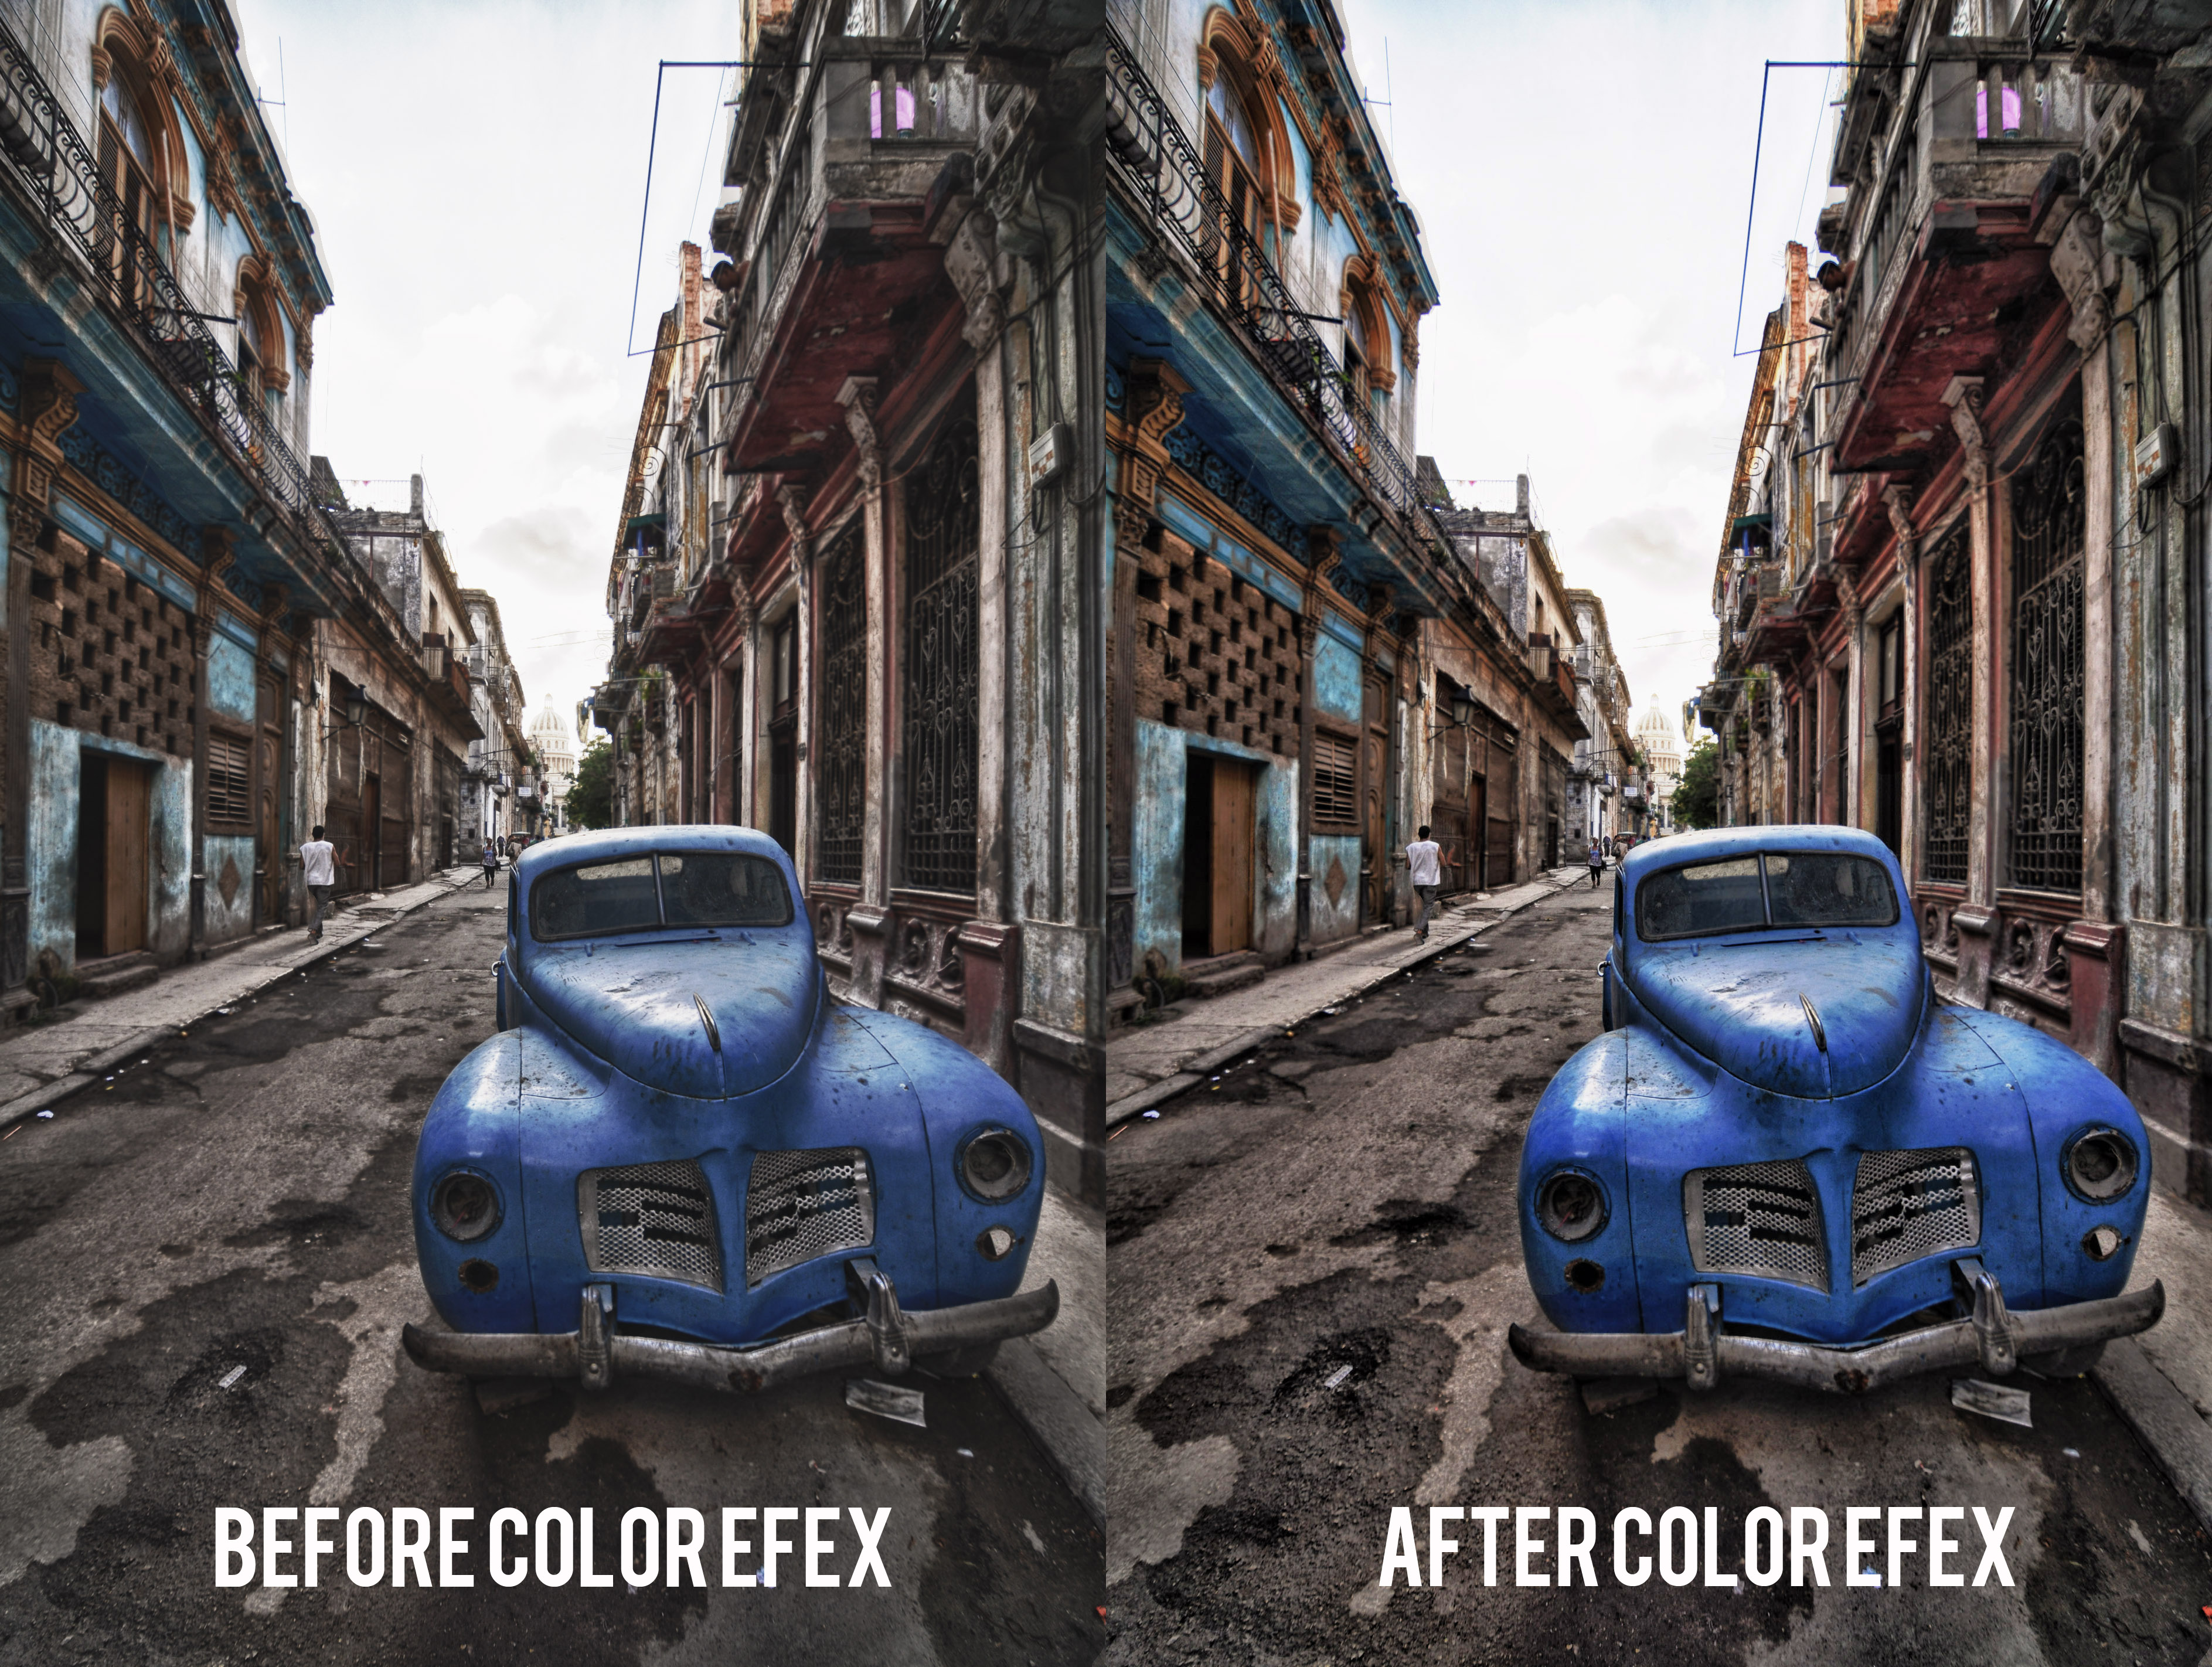 Color Efex Pro HDR Comparison